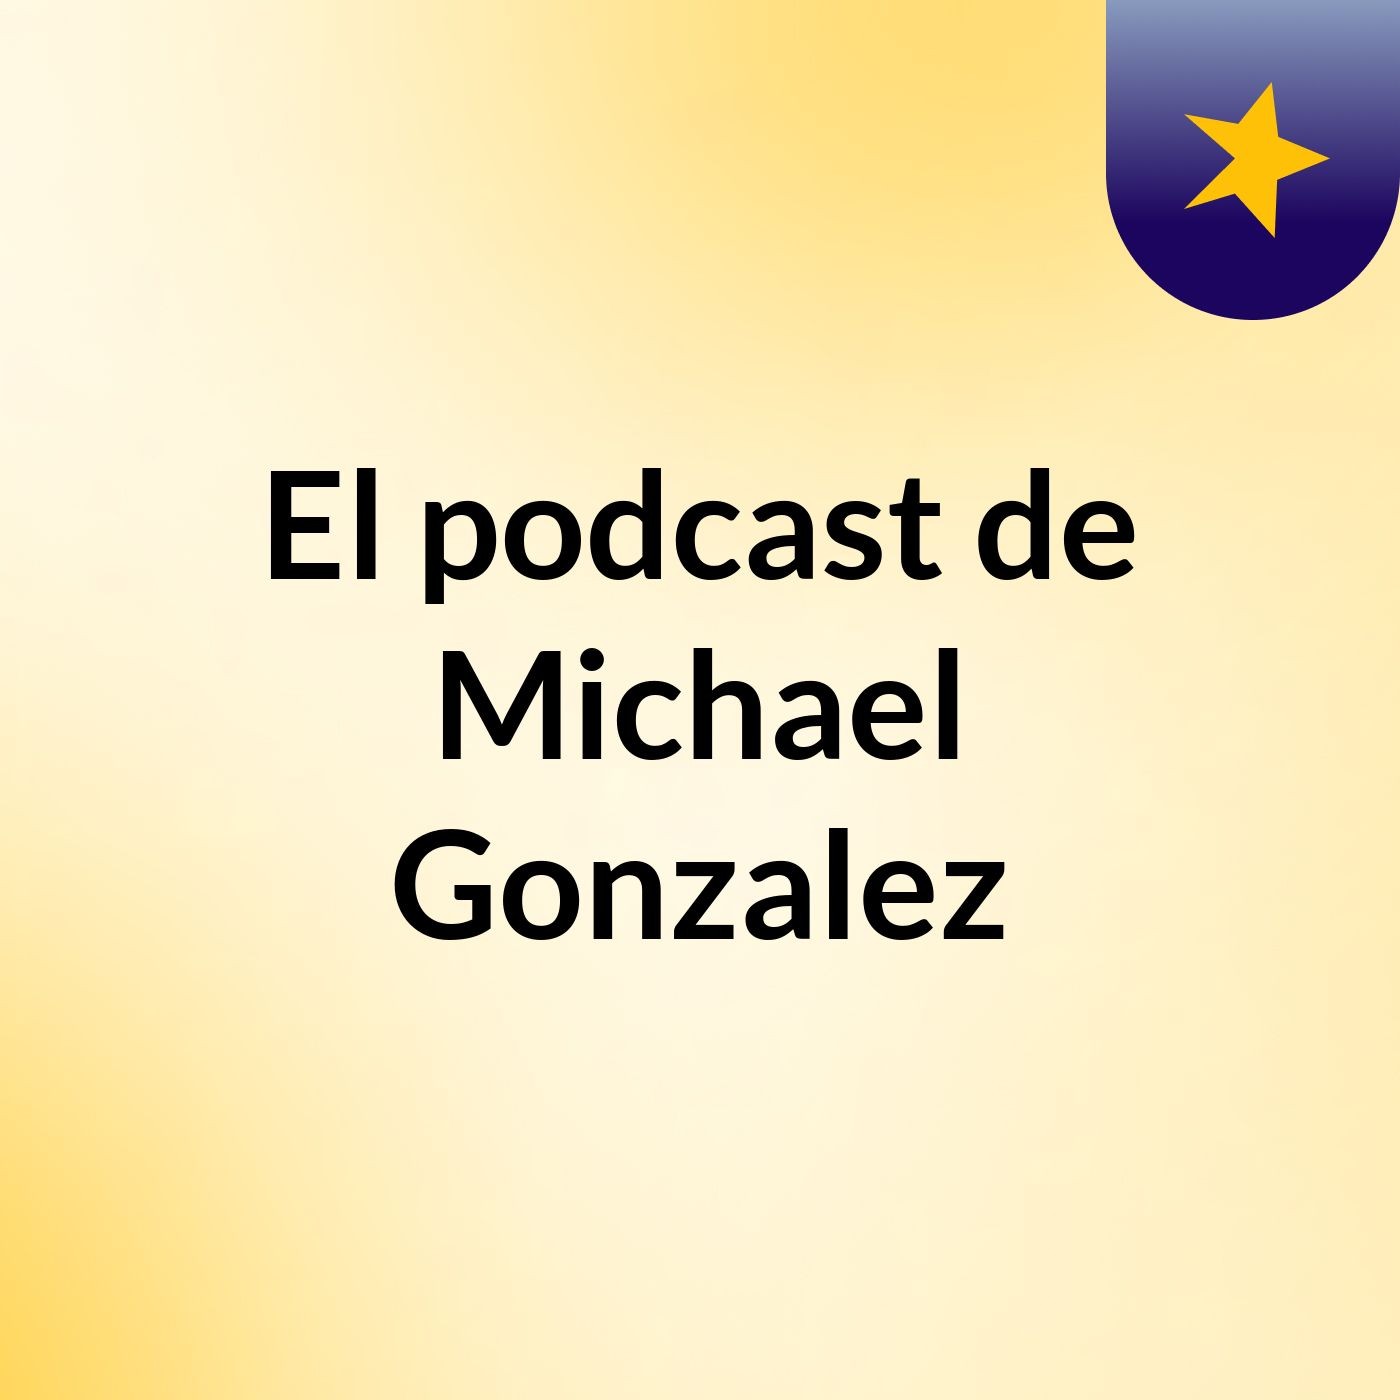 El podcast de Michael Gonzalez